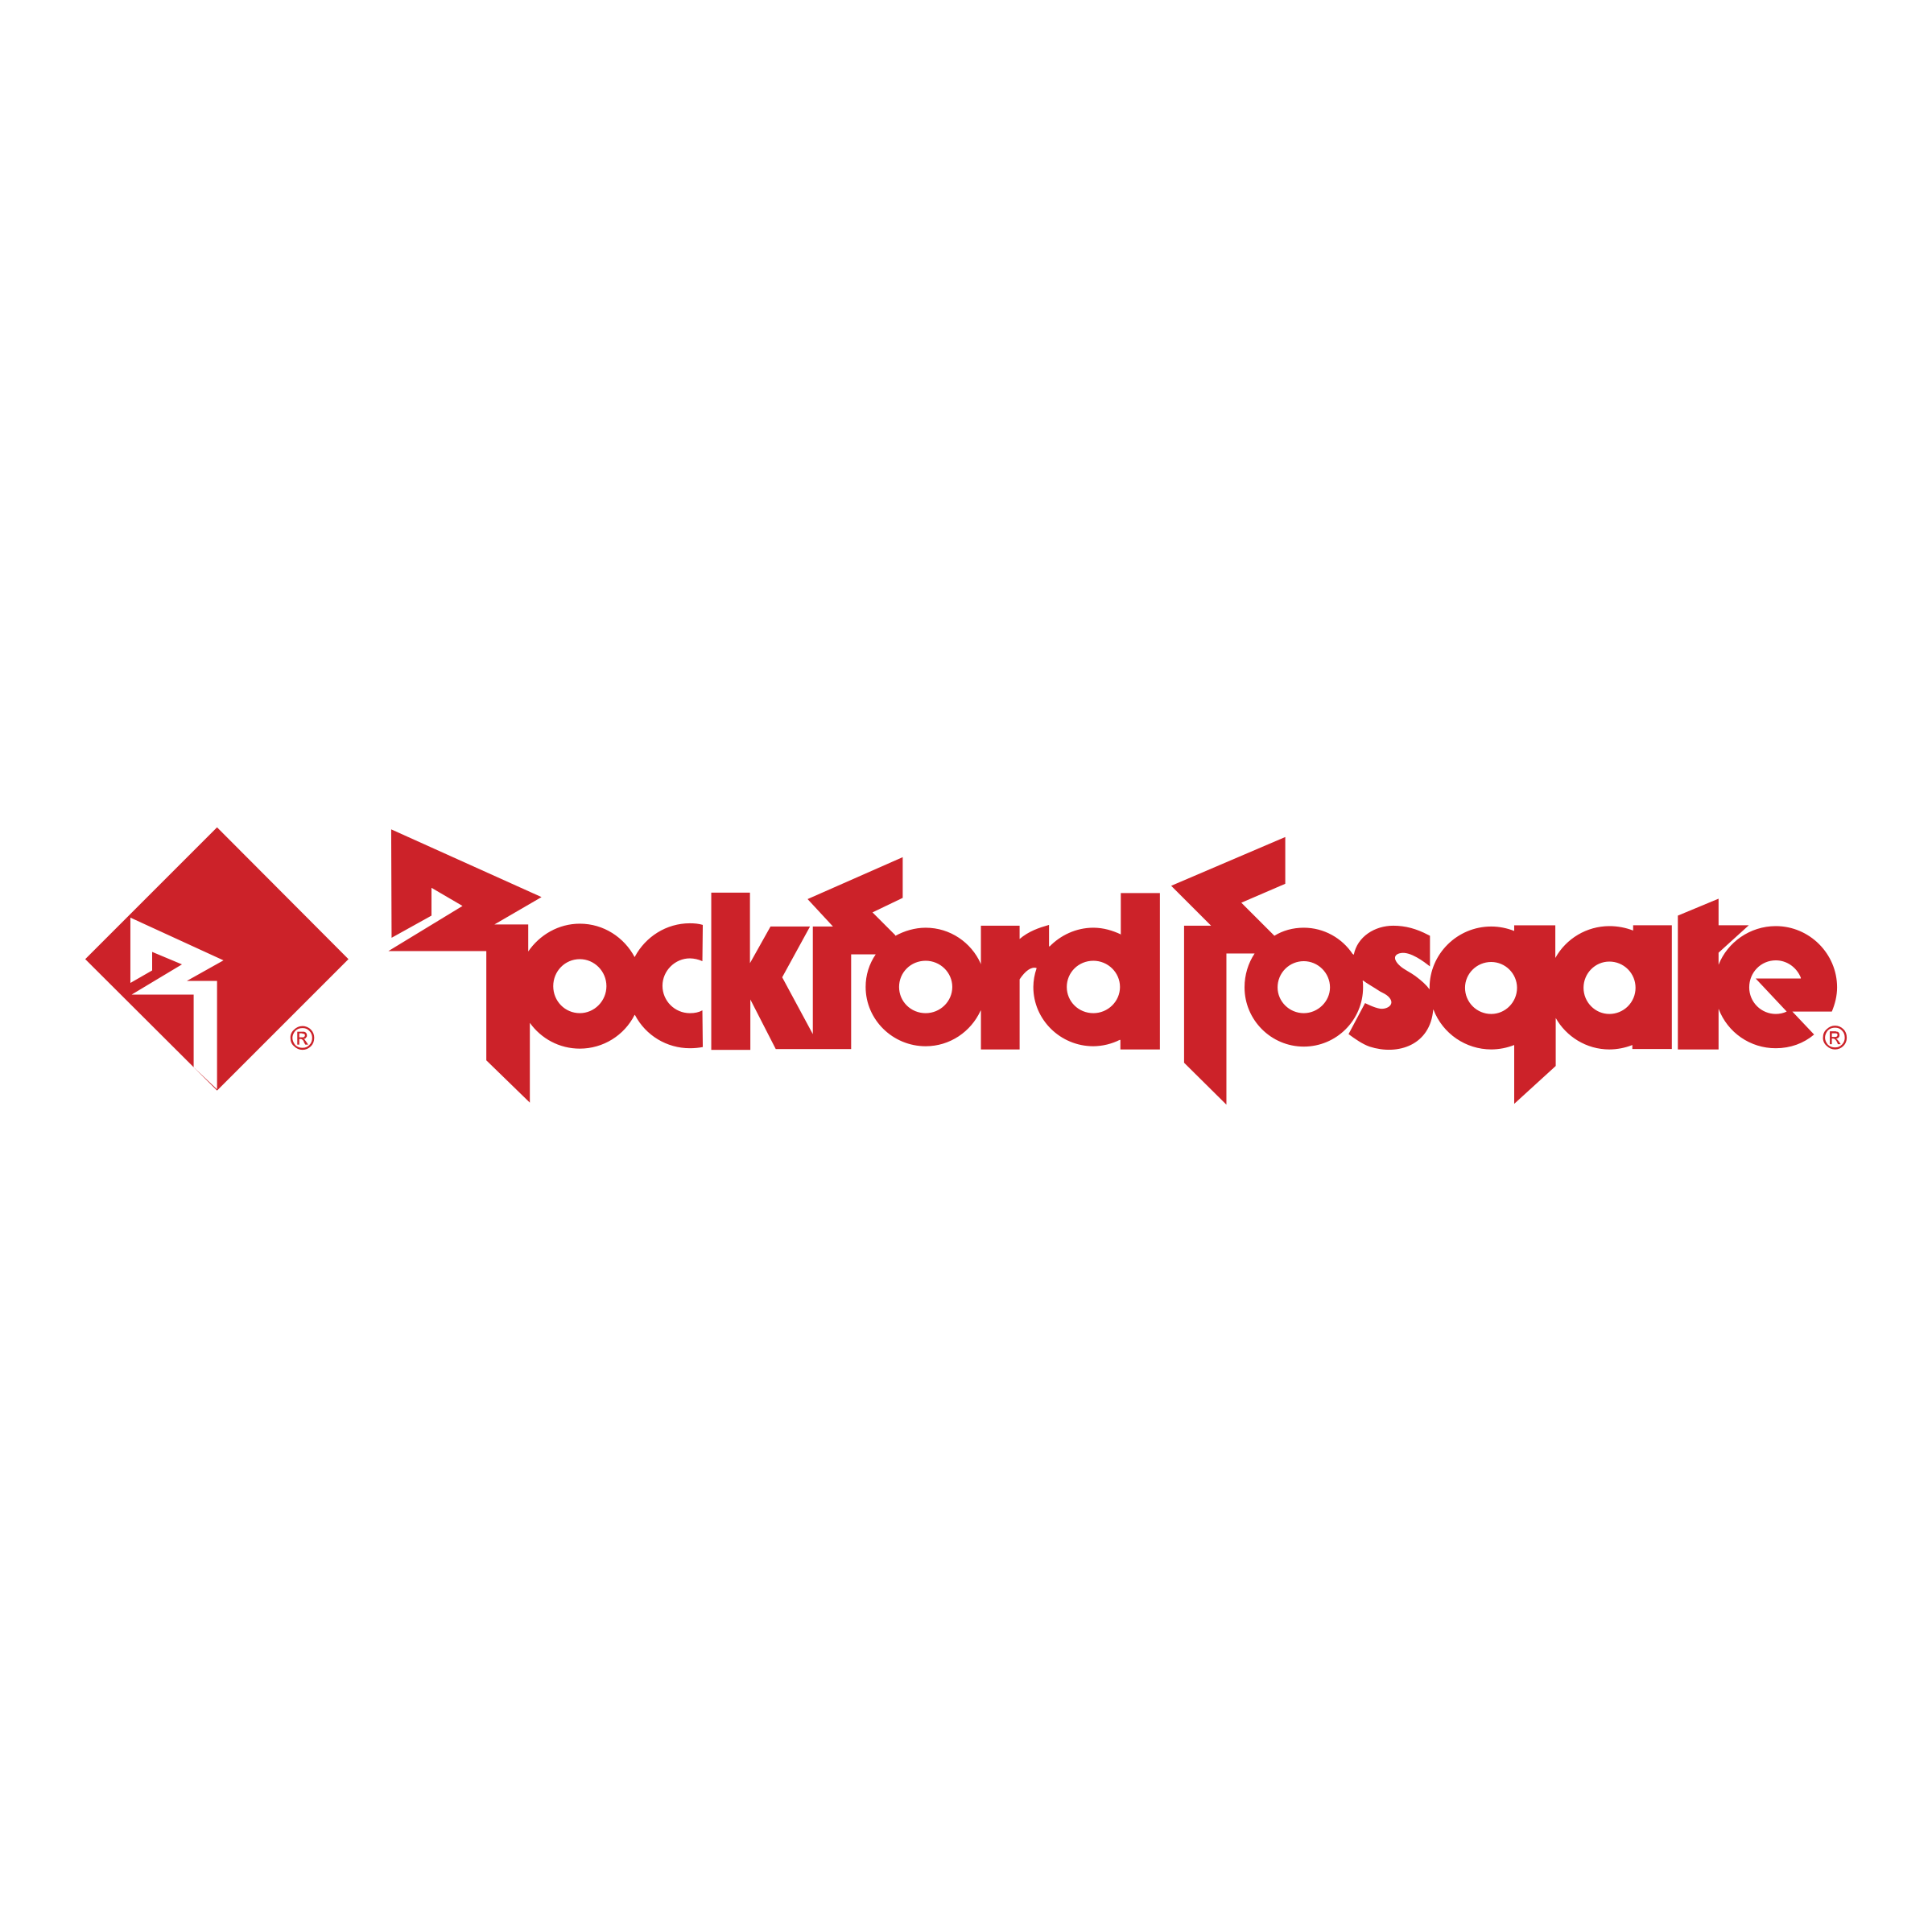 rockford-fosgate-3-logo-png-transparent.png